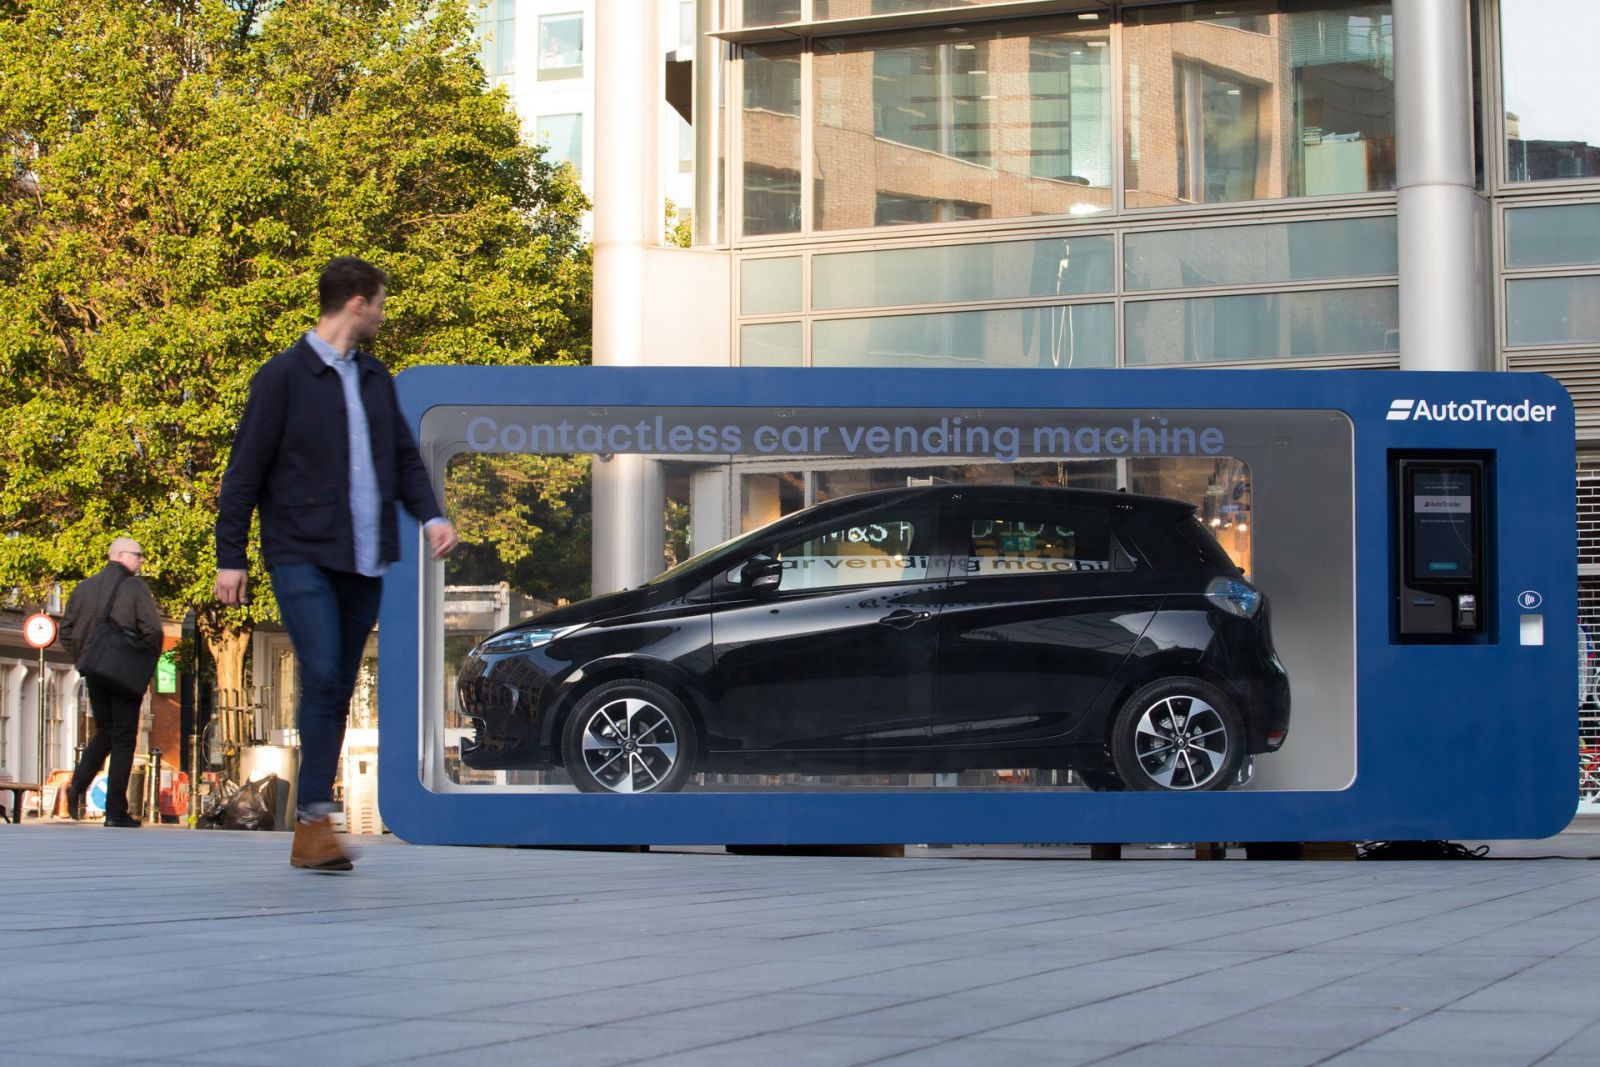 В Лондоне появился автомат по продаже авто. Фото: carscoops.com